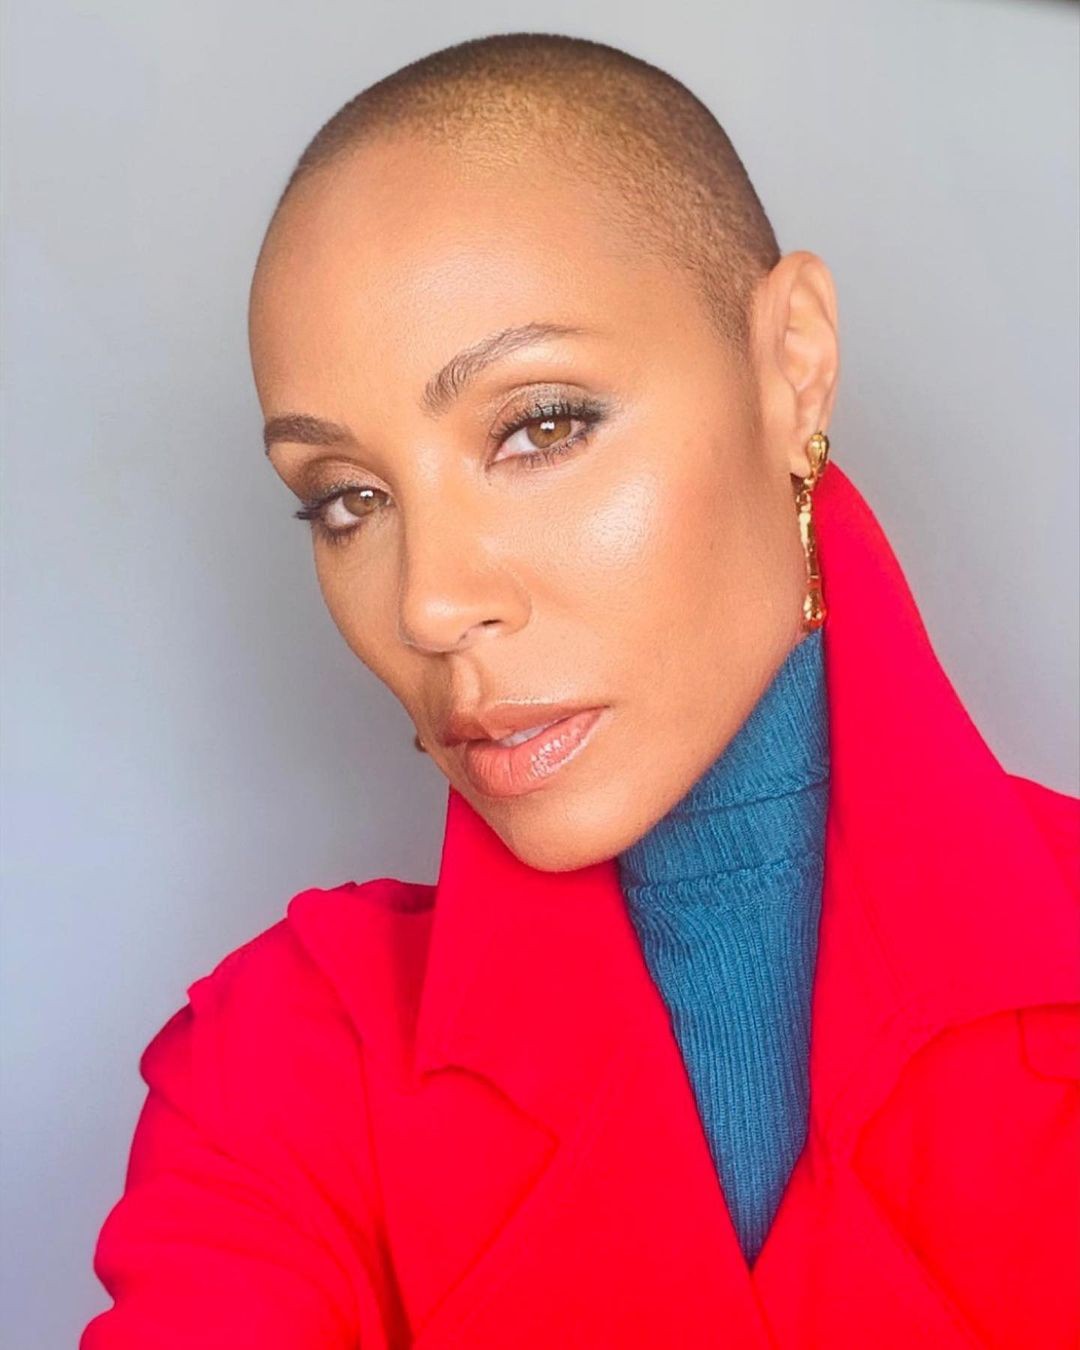 Comentários sobre a alopecia da atriz Jada Pinkett Smith foram feitos no Oscar, pelo apresentador Chris Rock, na noite do último domingo (27) (Foto: Reprodução Instagram)